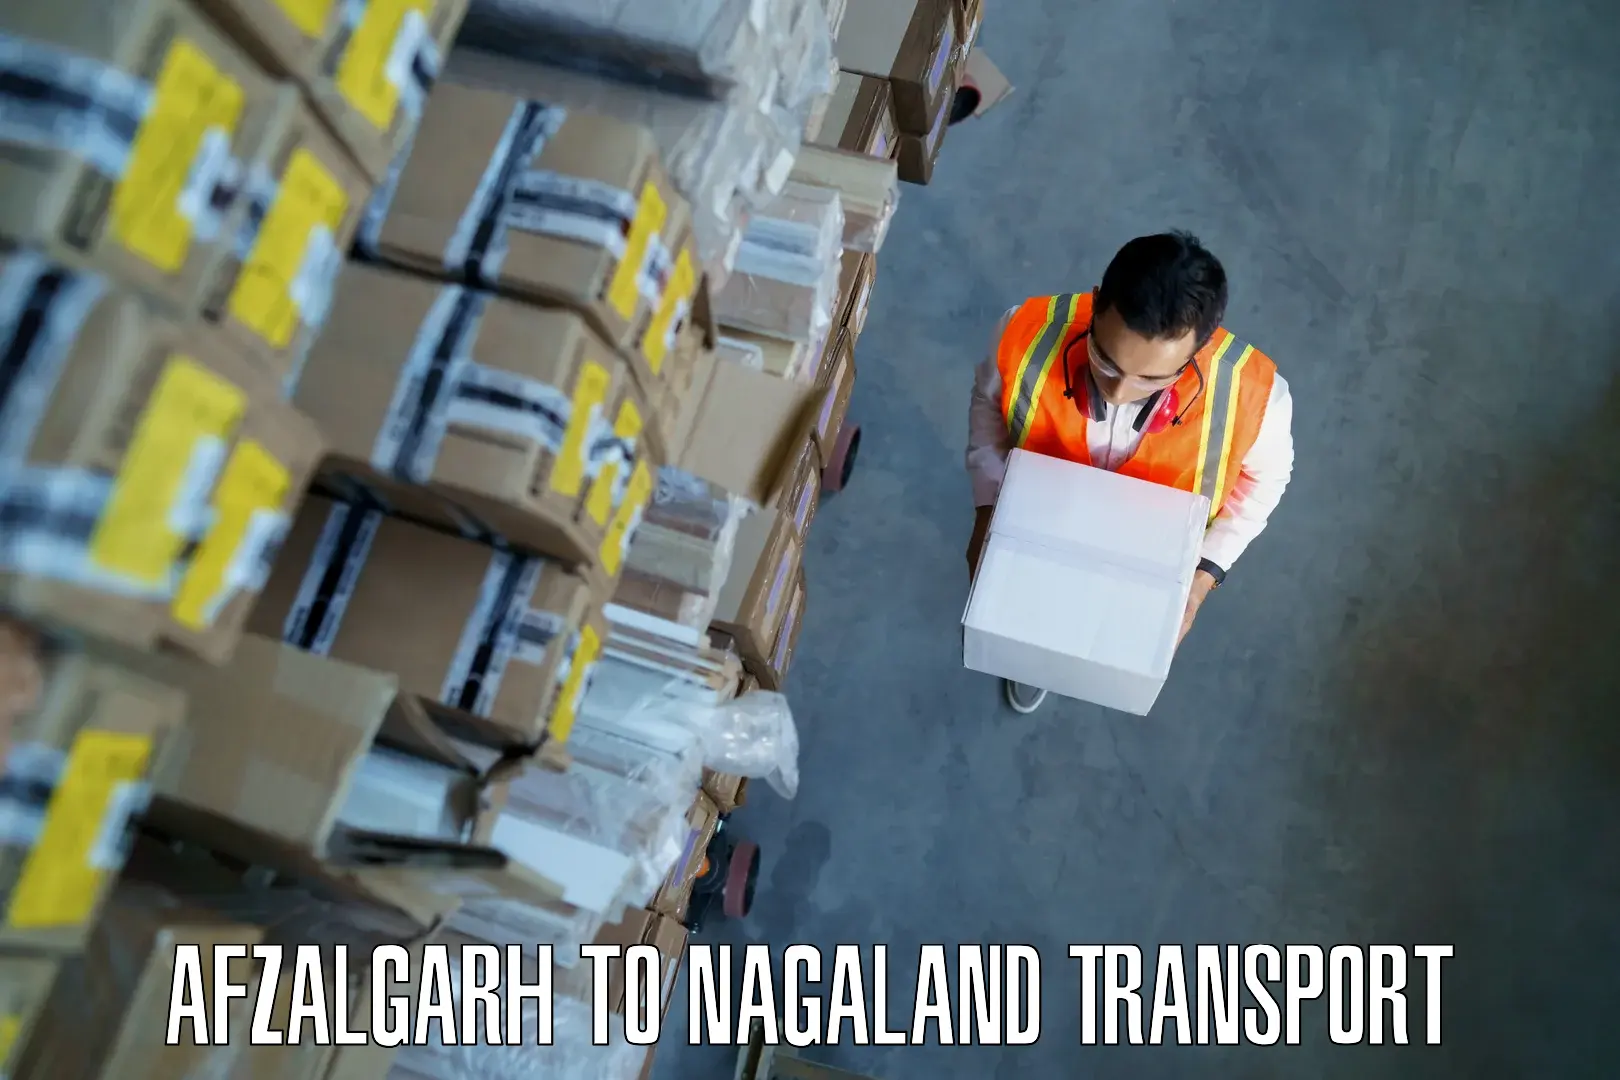 Nearest transport service Afzalgarh to NIT Nagaland